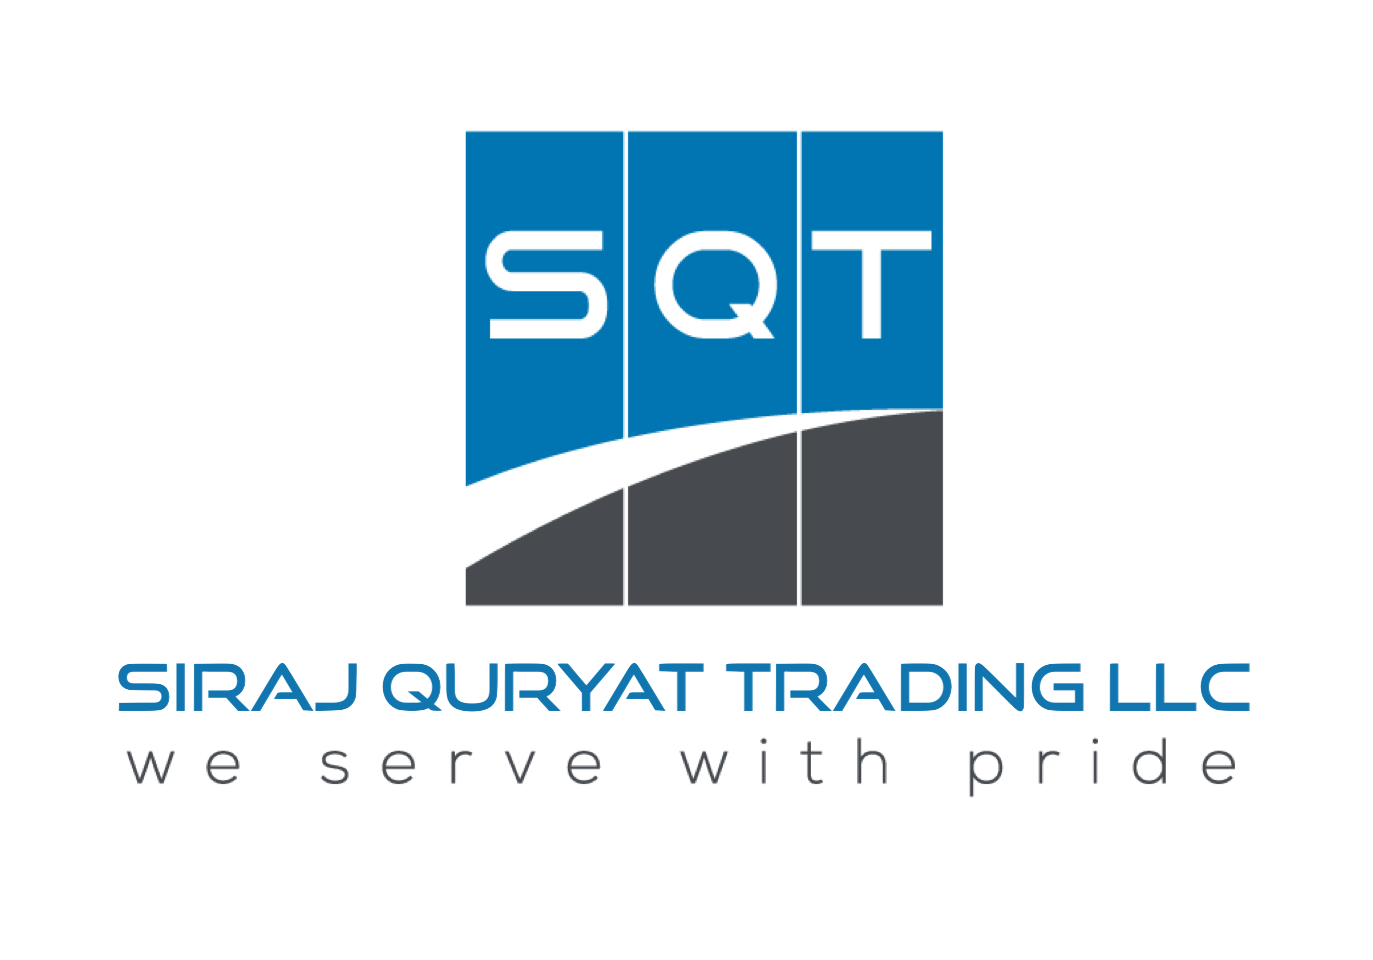 Siraj Quriyat Trading LLC